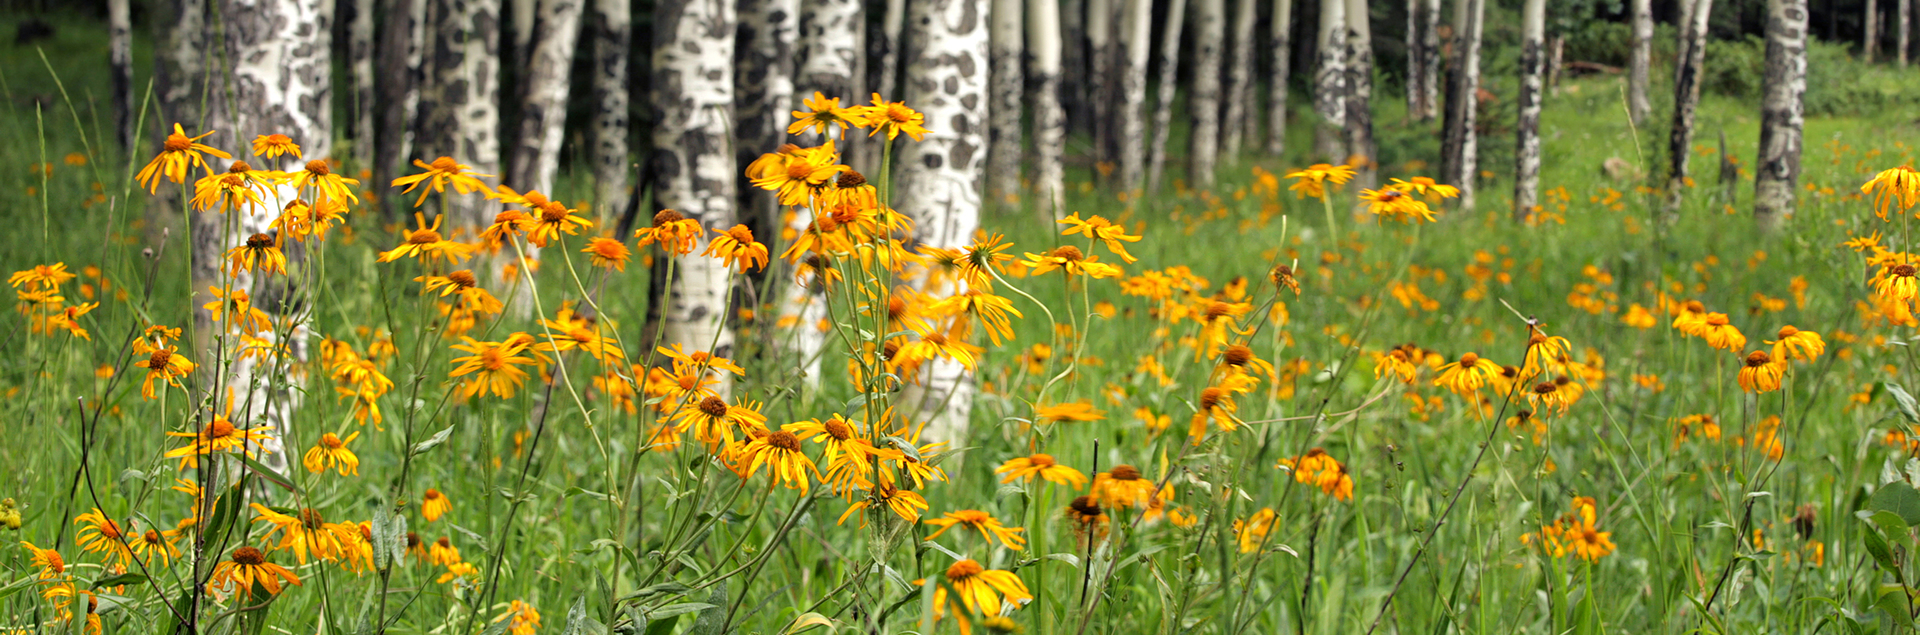 Wildflower field, New Mexico